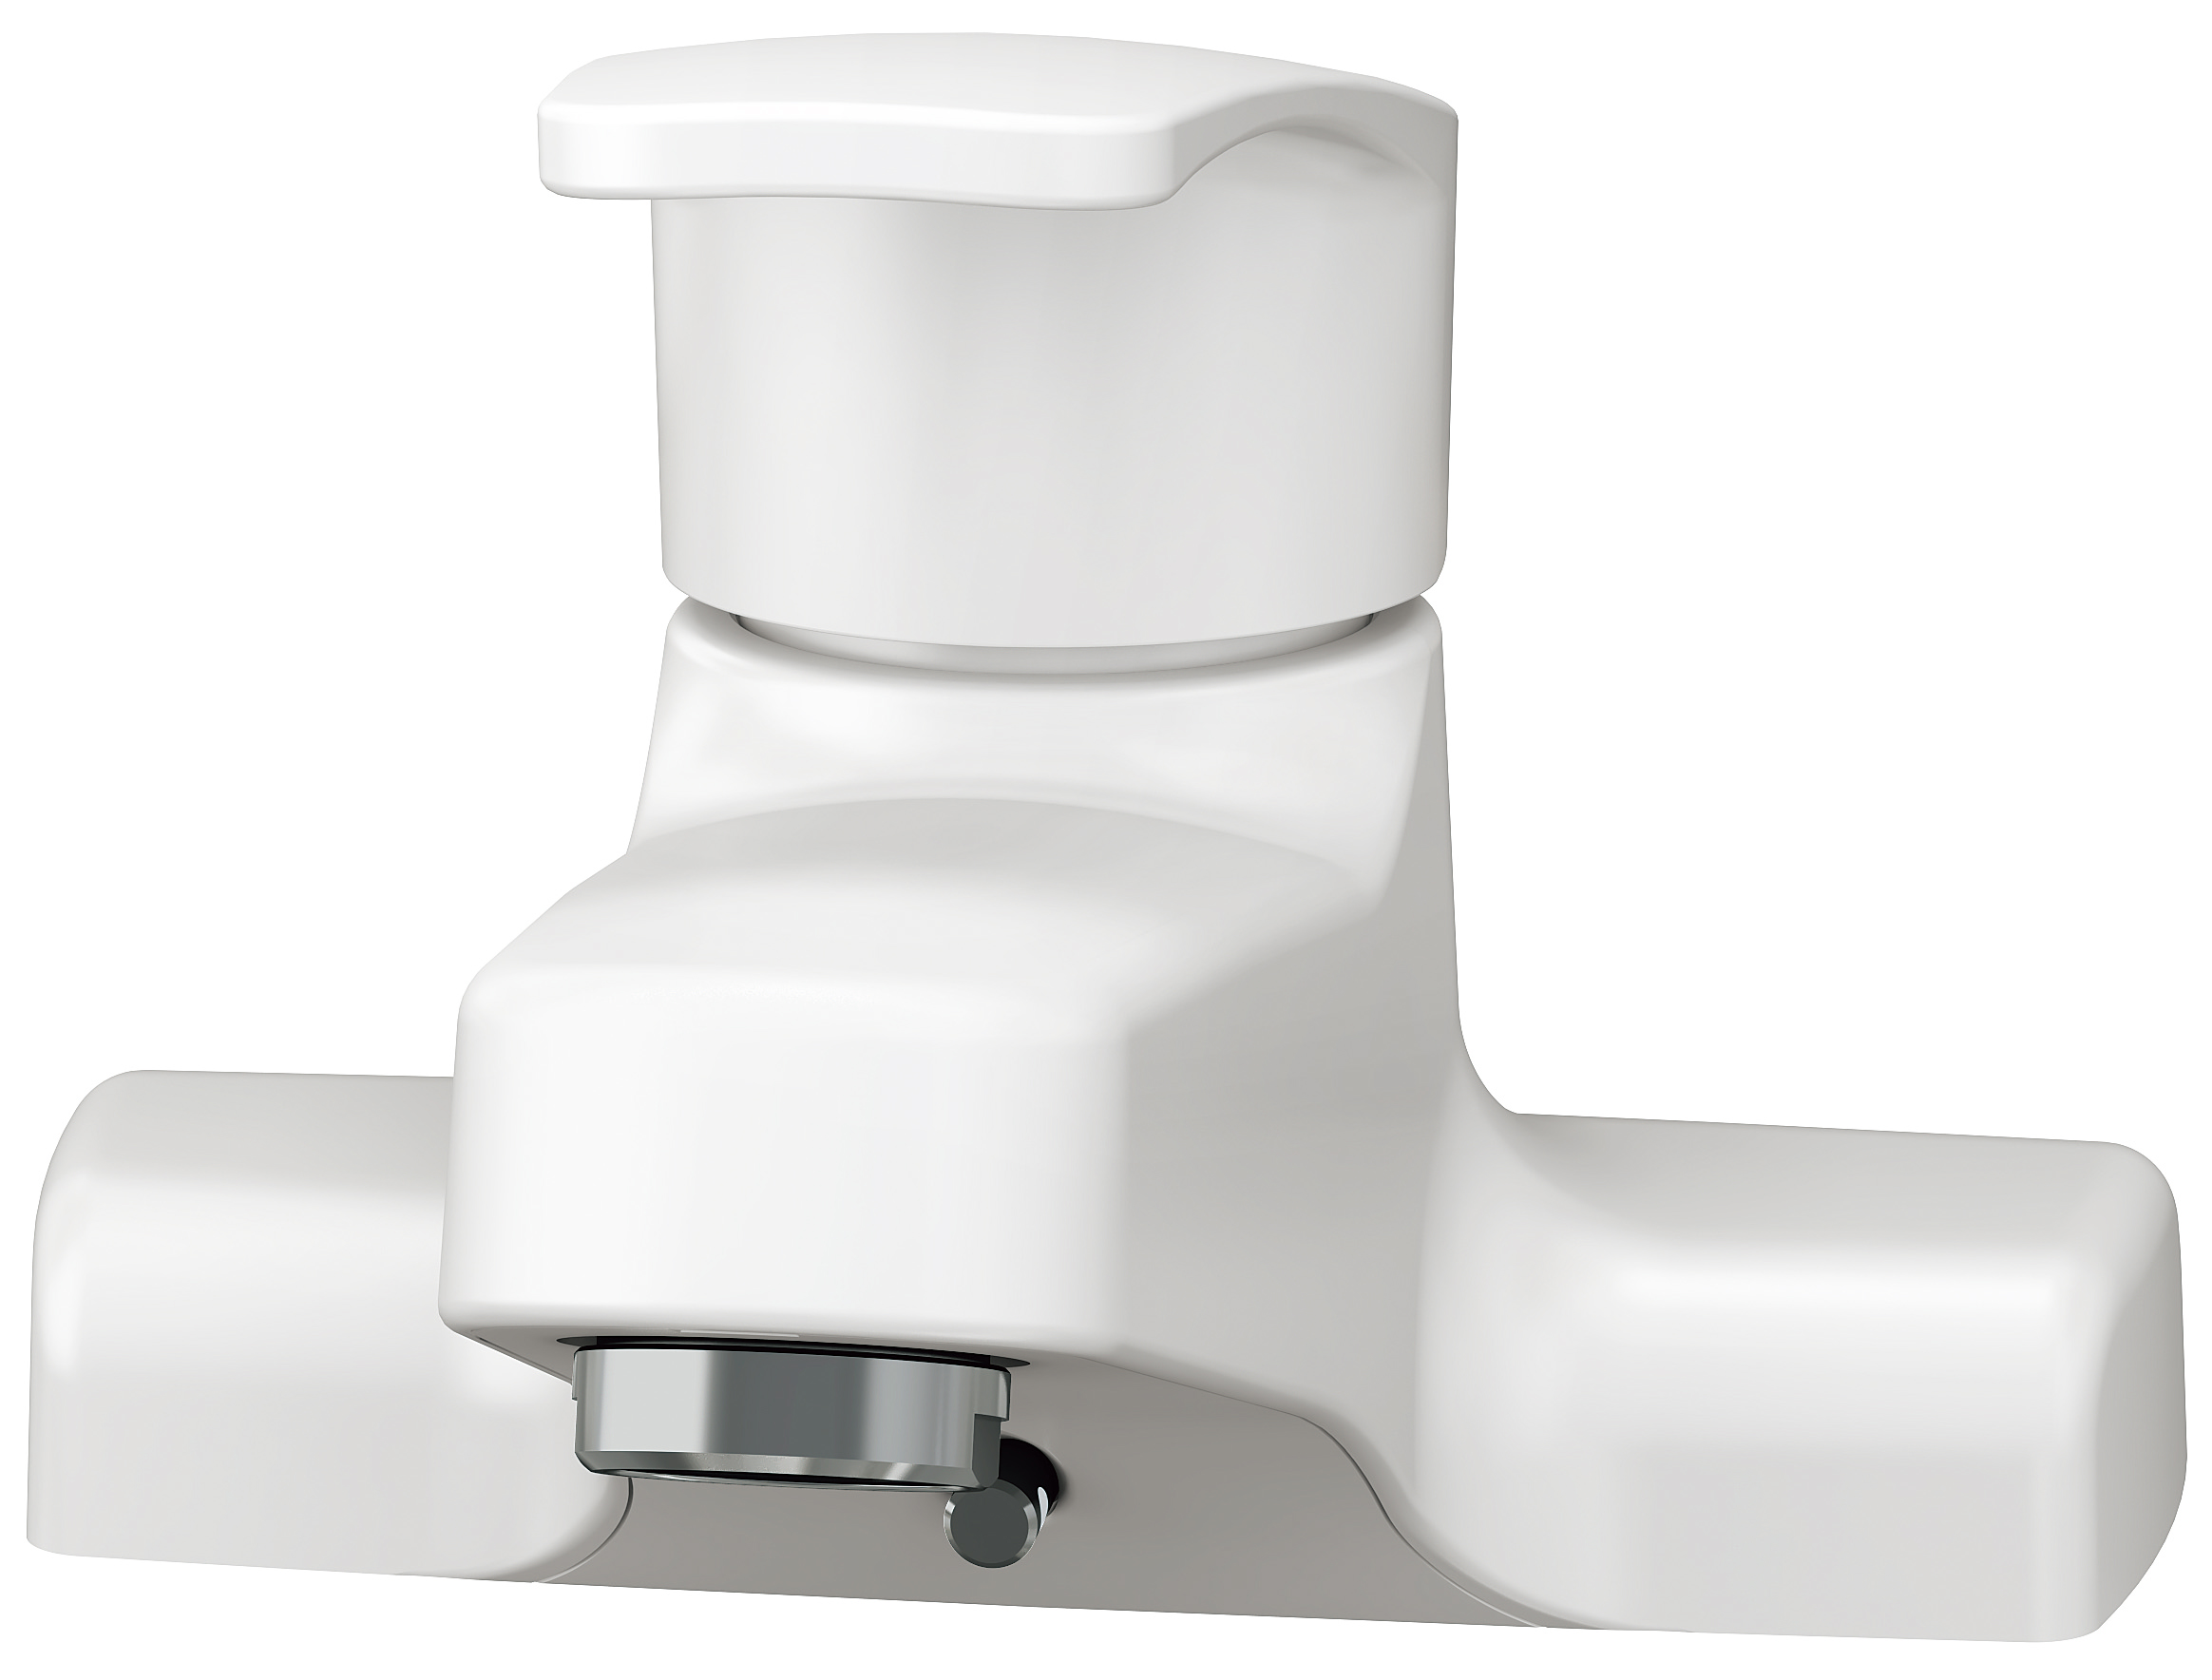 洗面化粧台ALBAシリーズ 間口60㎝ シングル混合栓1面鏡 2枚扉 白熱球 ホワイト